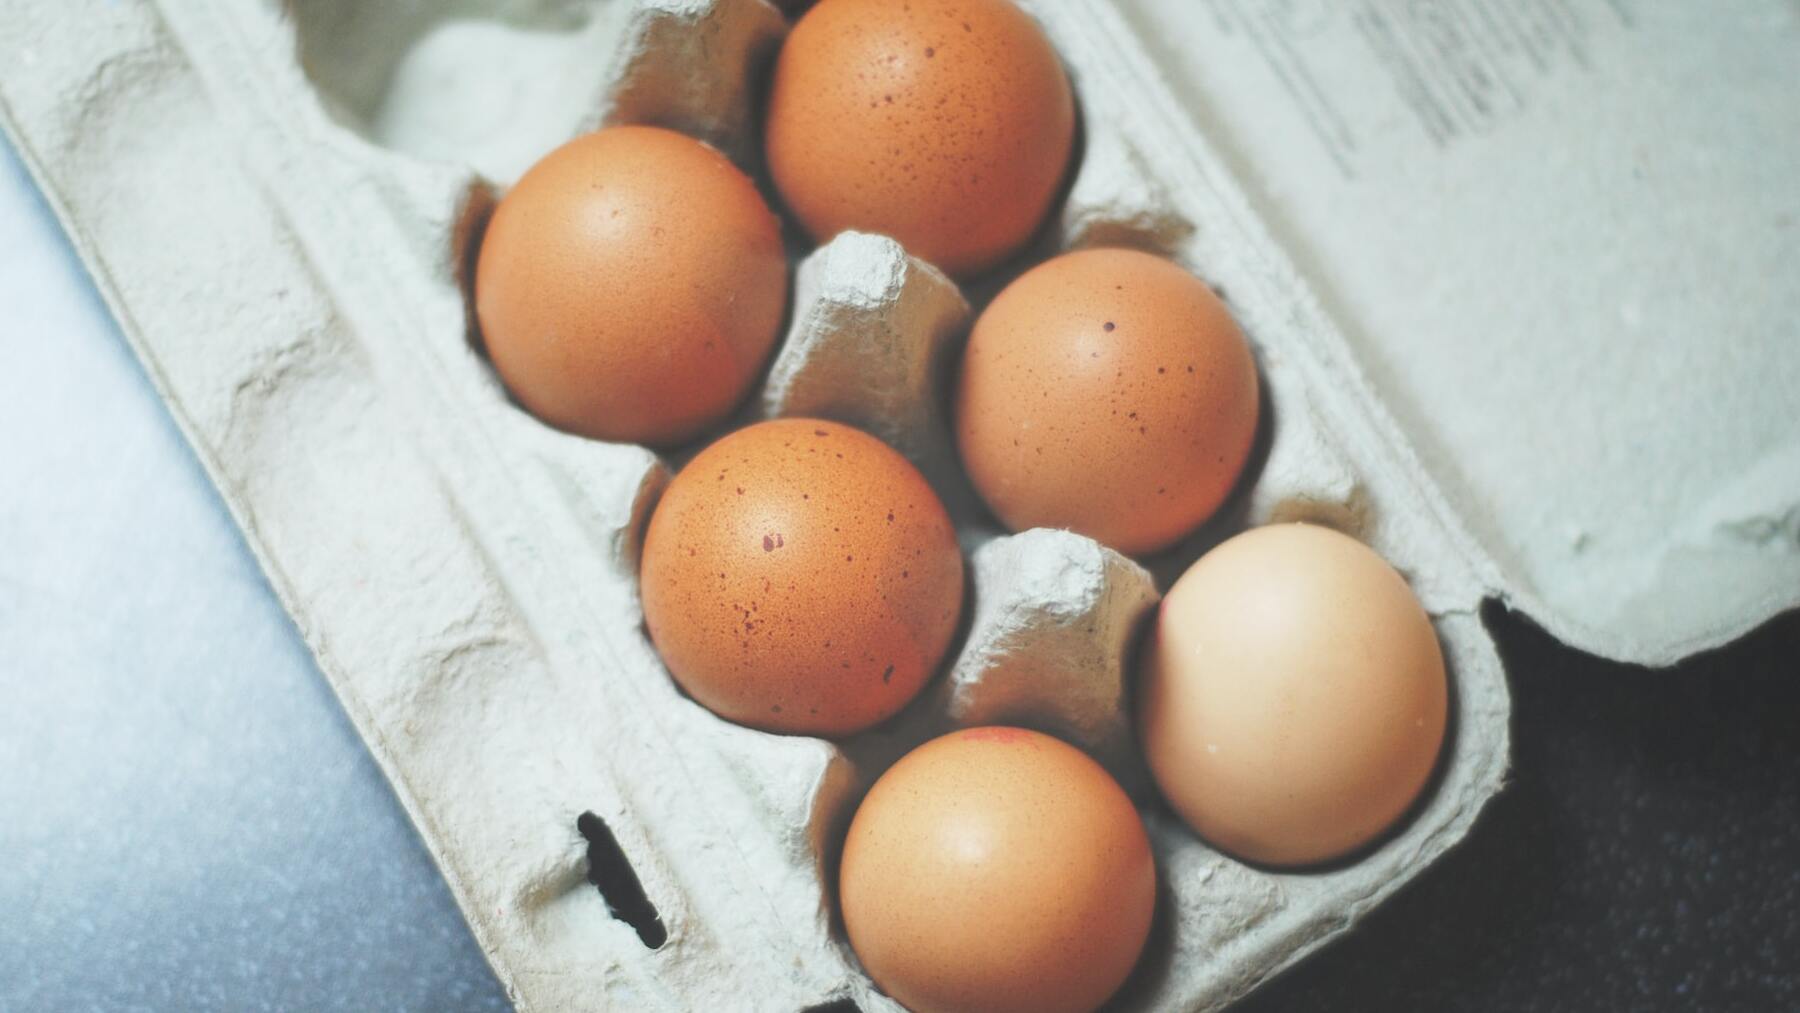 La increíble razón por la que los huevos se venden en docenas